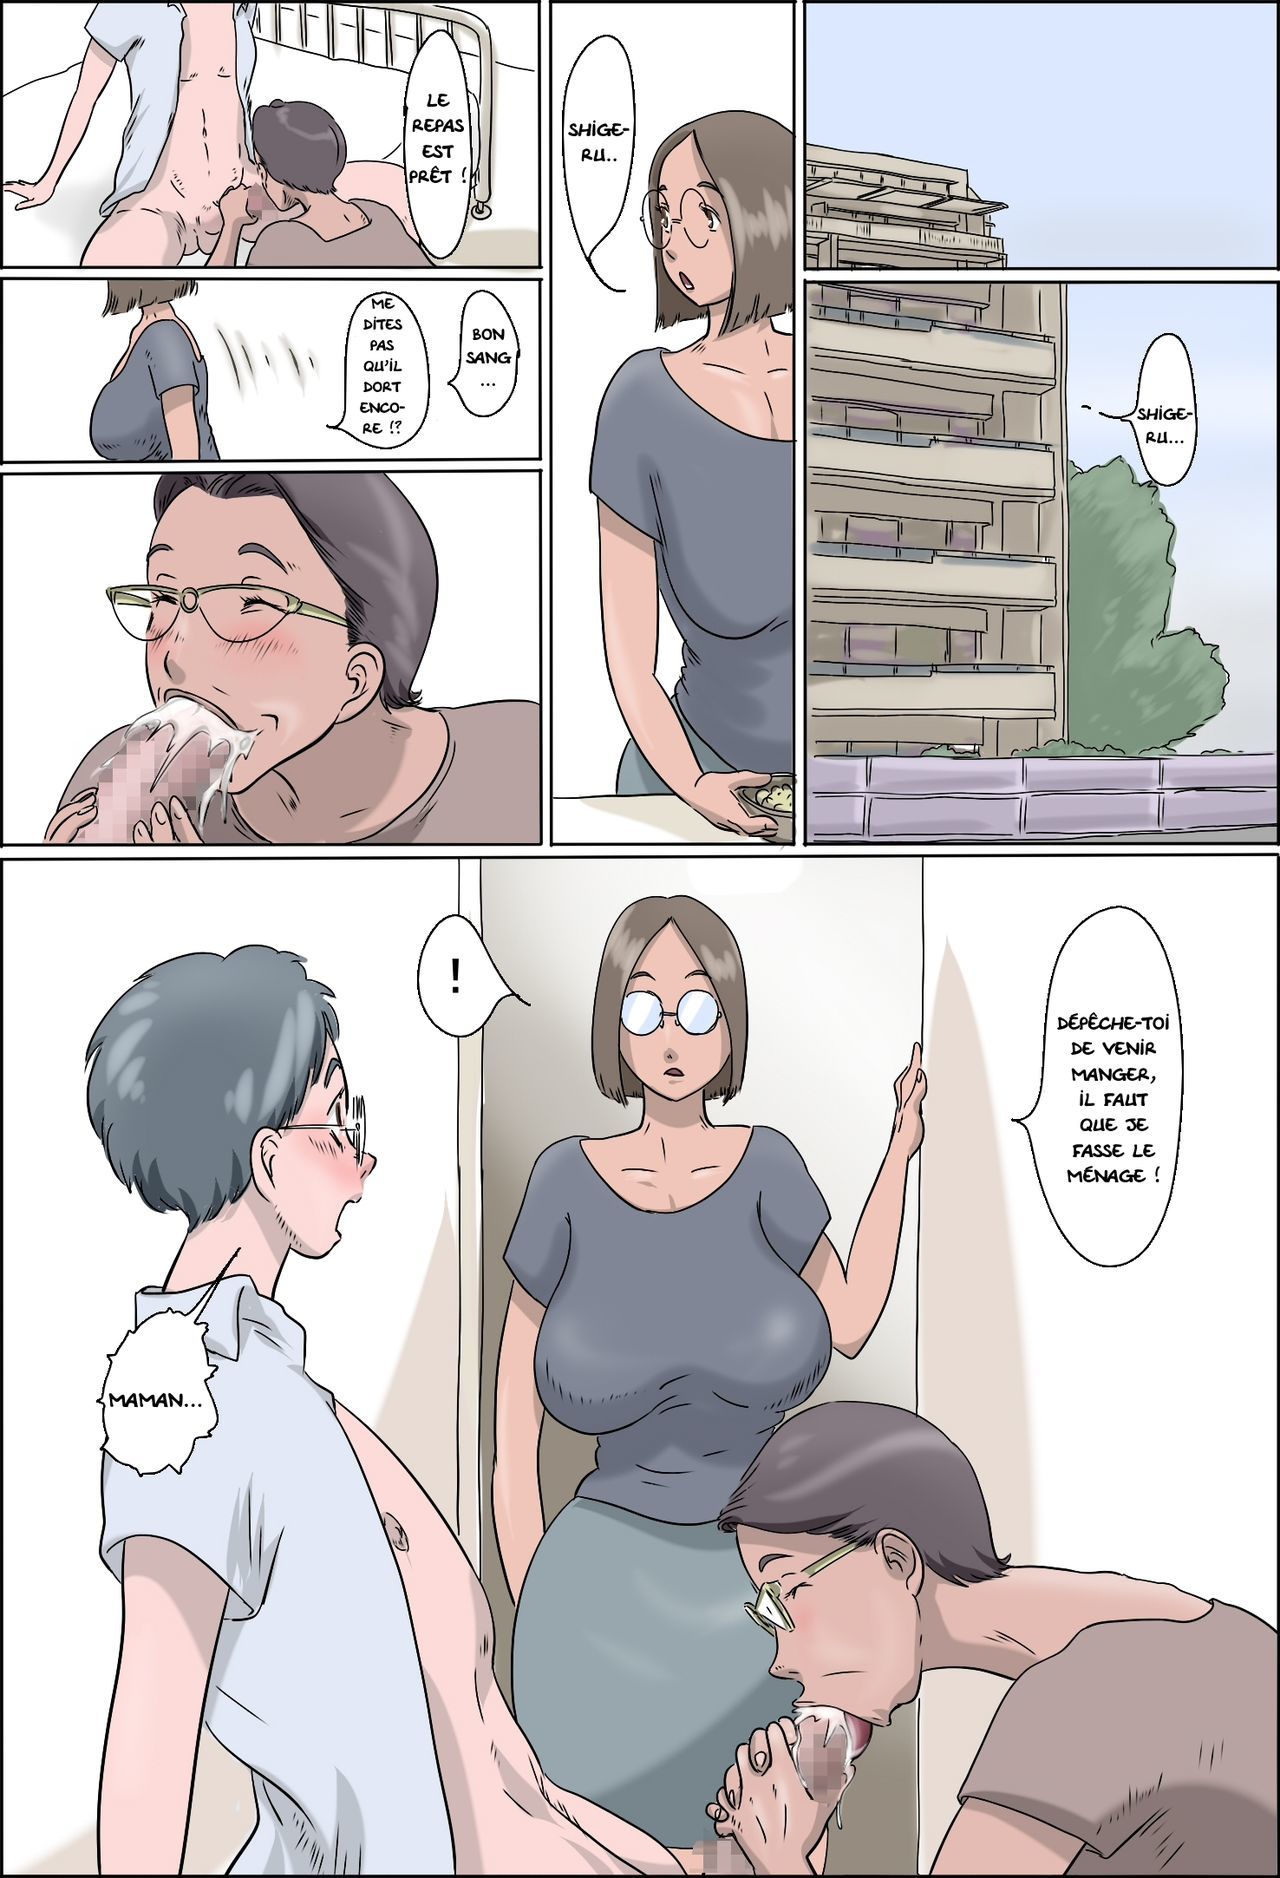 茂屋敷-ママとオバチャン-| L'appartement de Shigeru-Maman et Mamie-